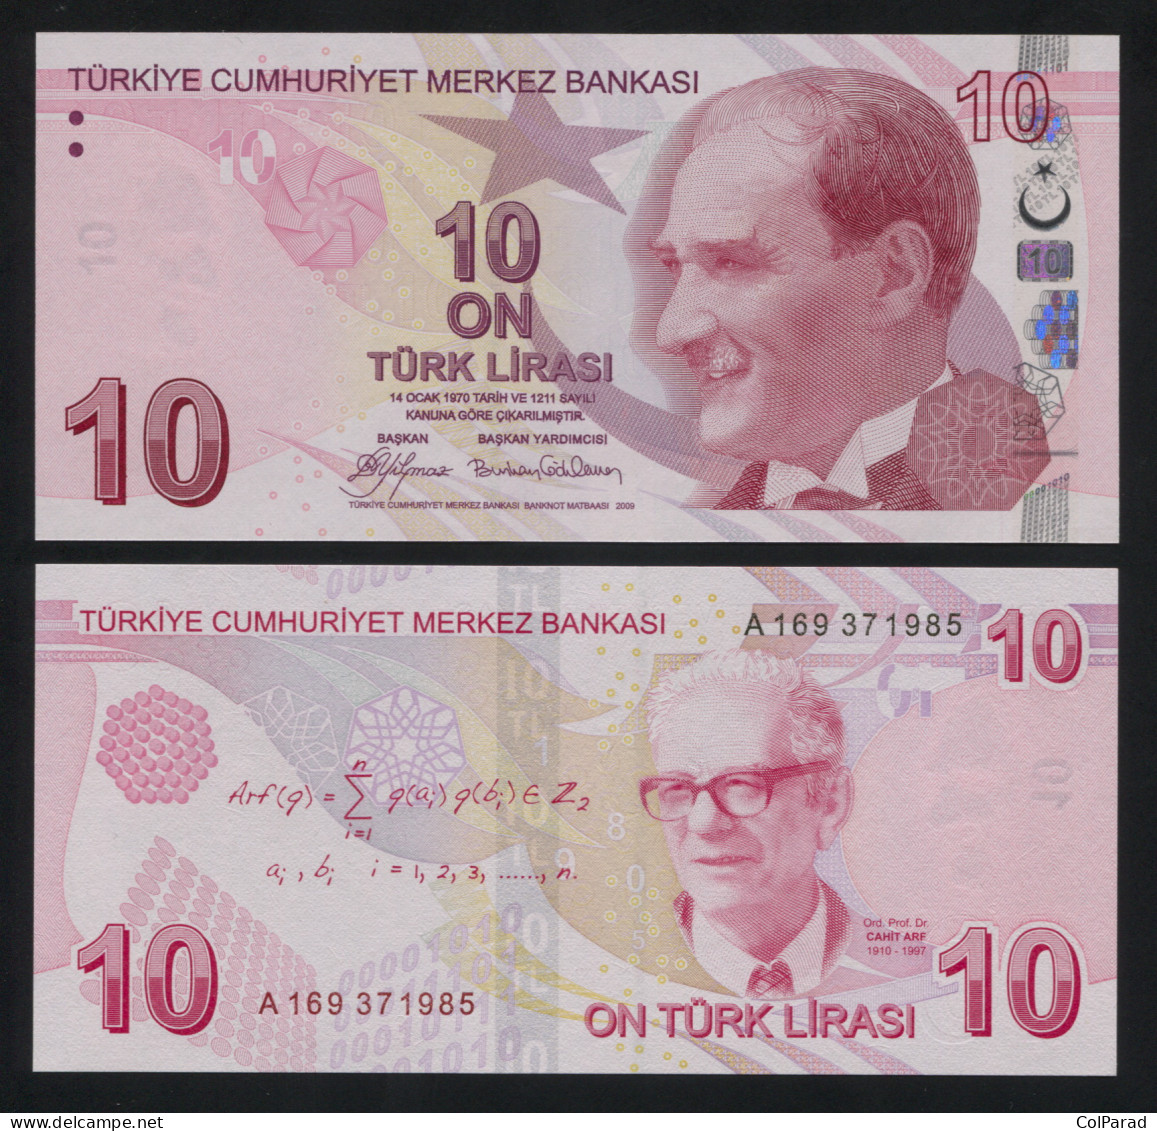 TURKEY 10 TÜRK LIRASI - 2009 - Paper Unc - P.223a Banknote - Turquia